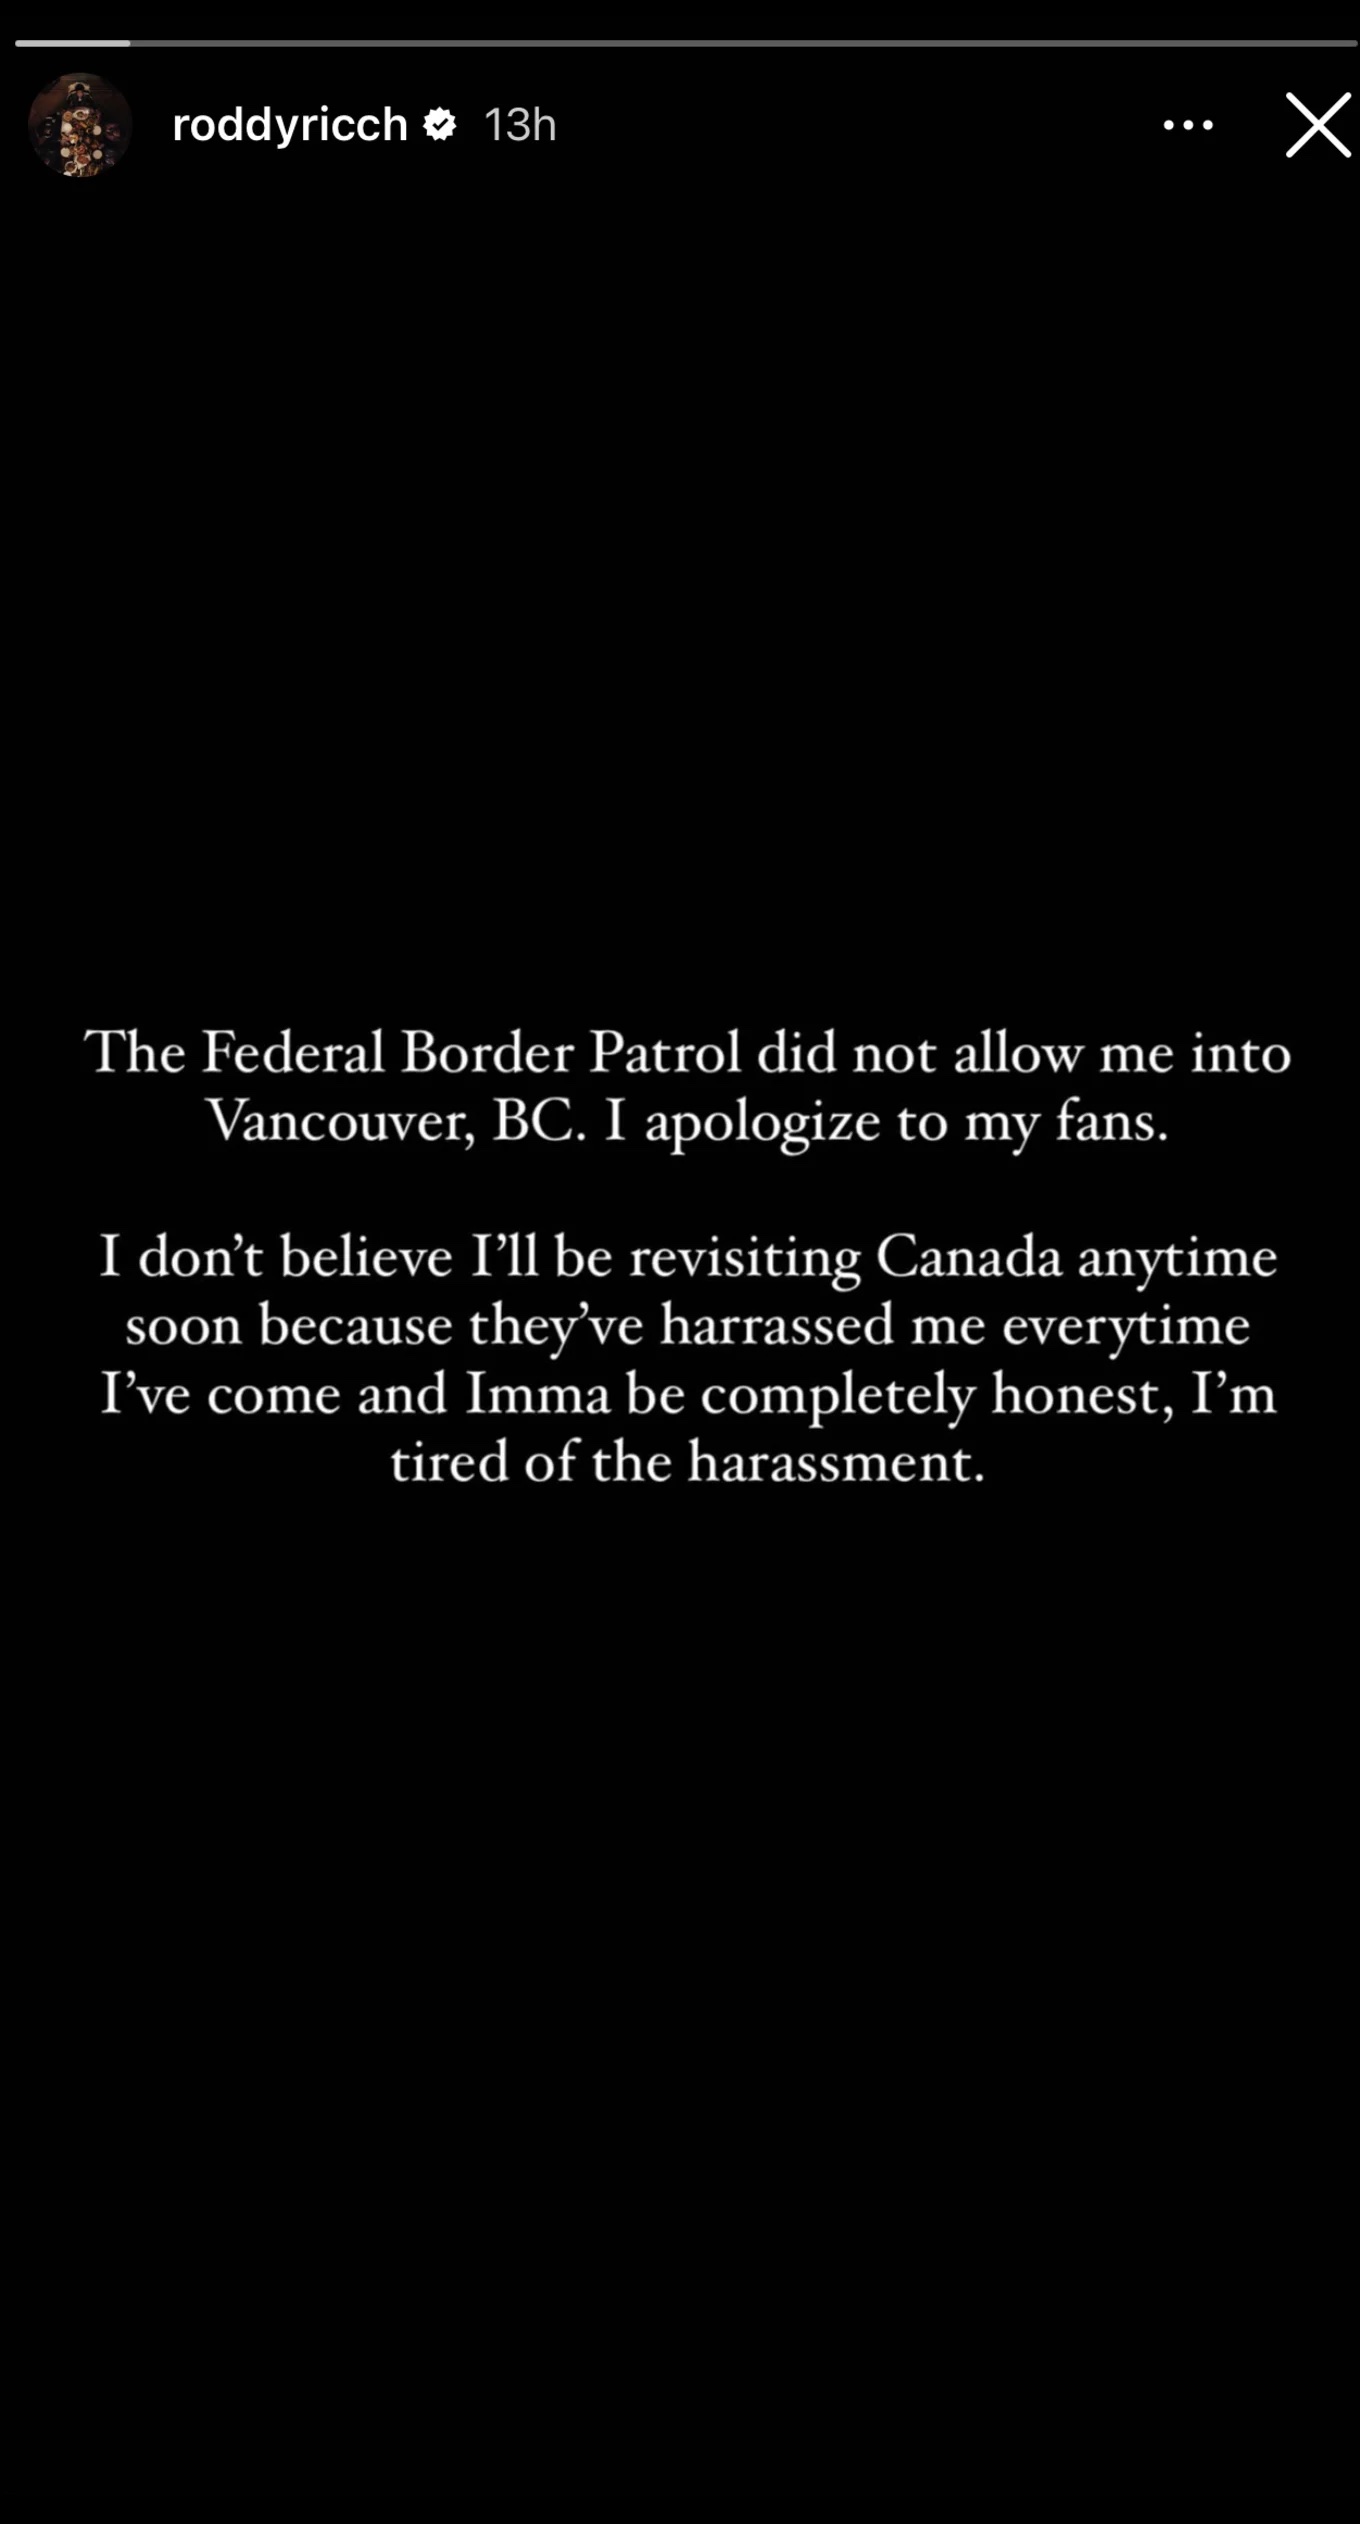 roddy ricch border patrol instagram